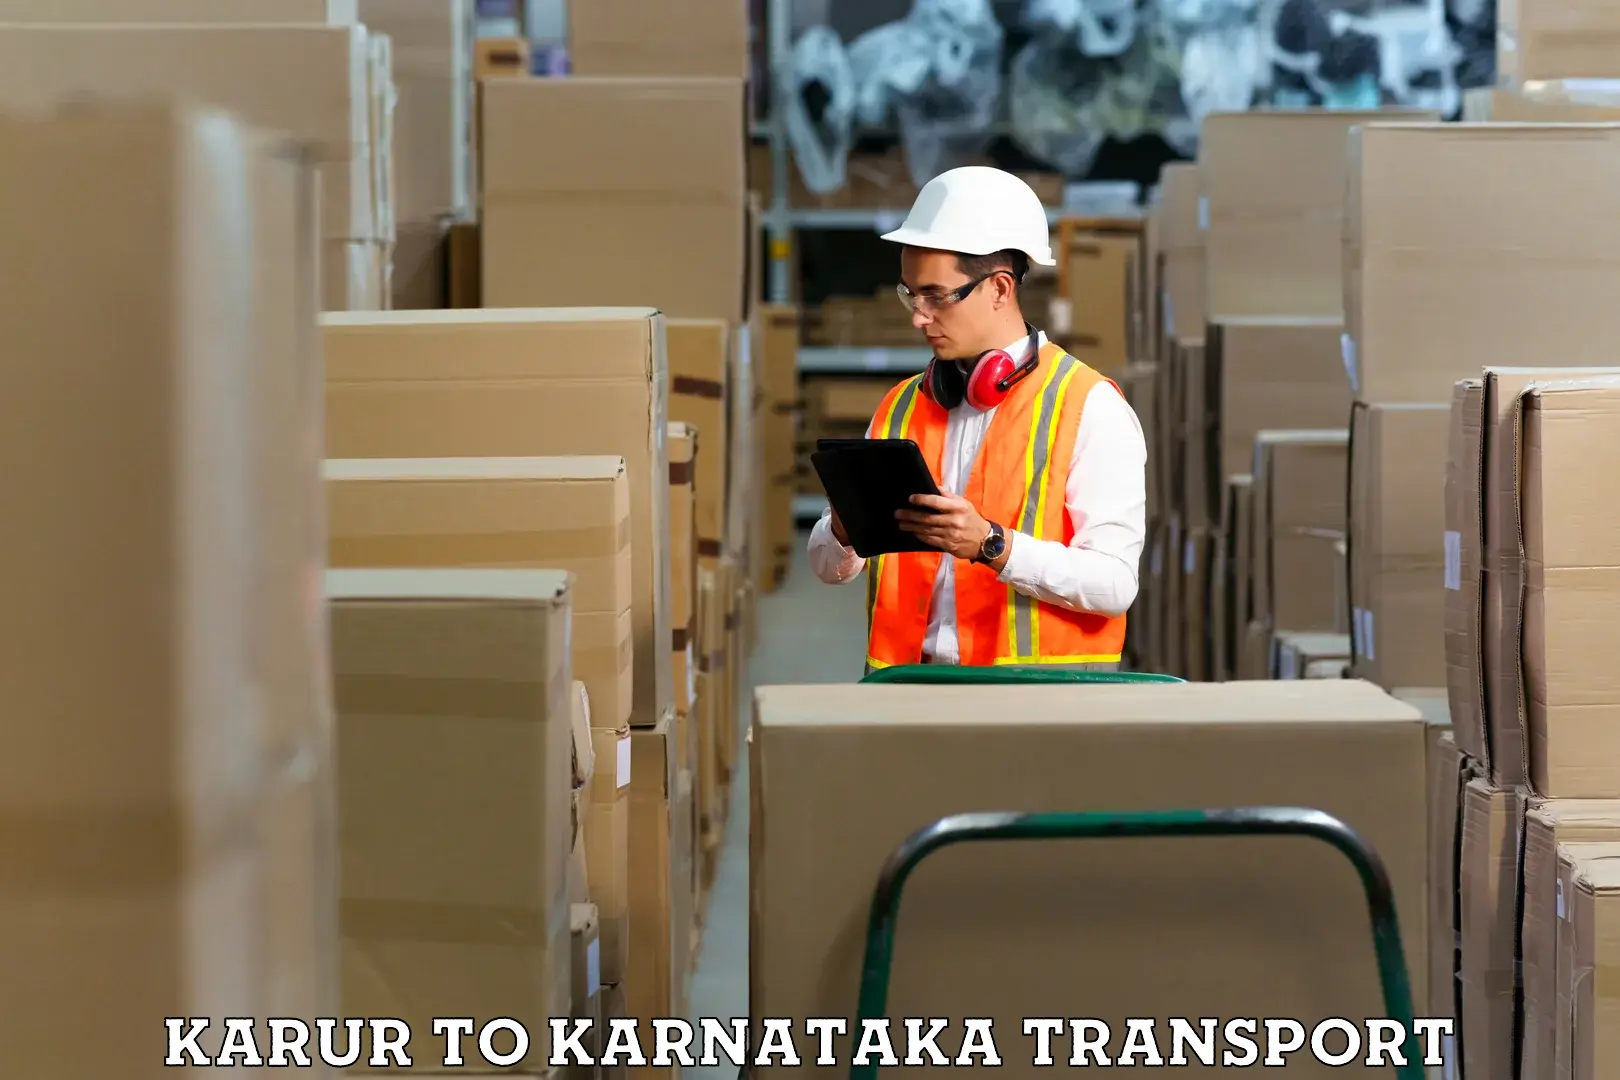 Container transport service Karur to Navalgund